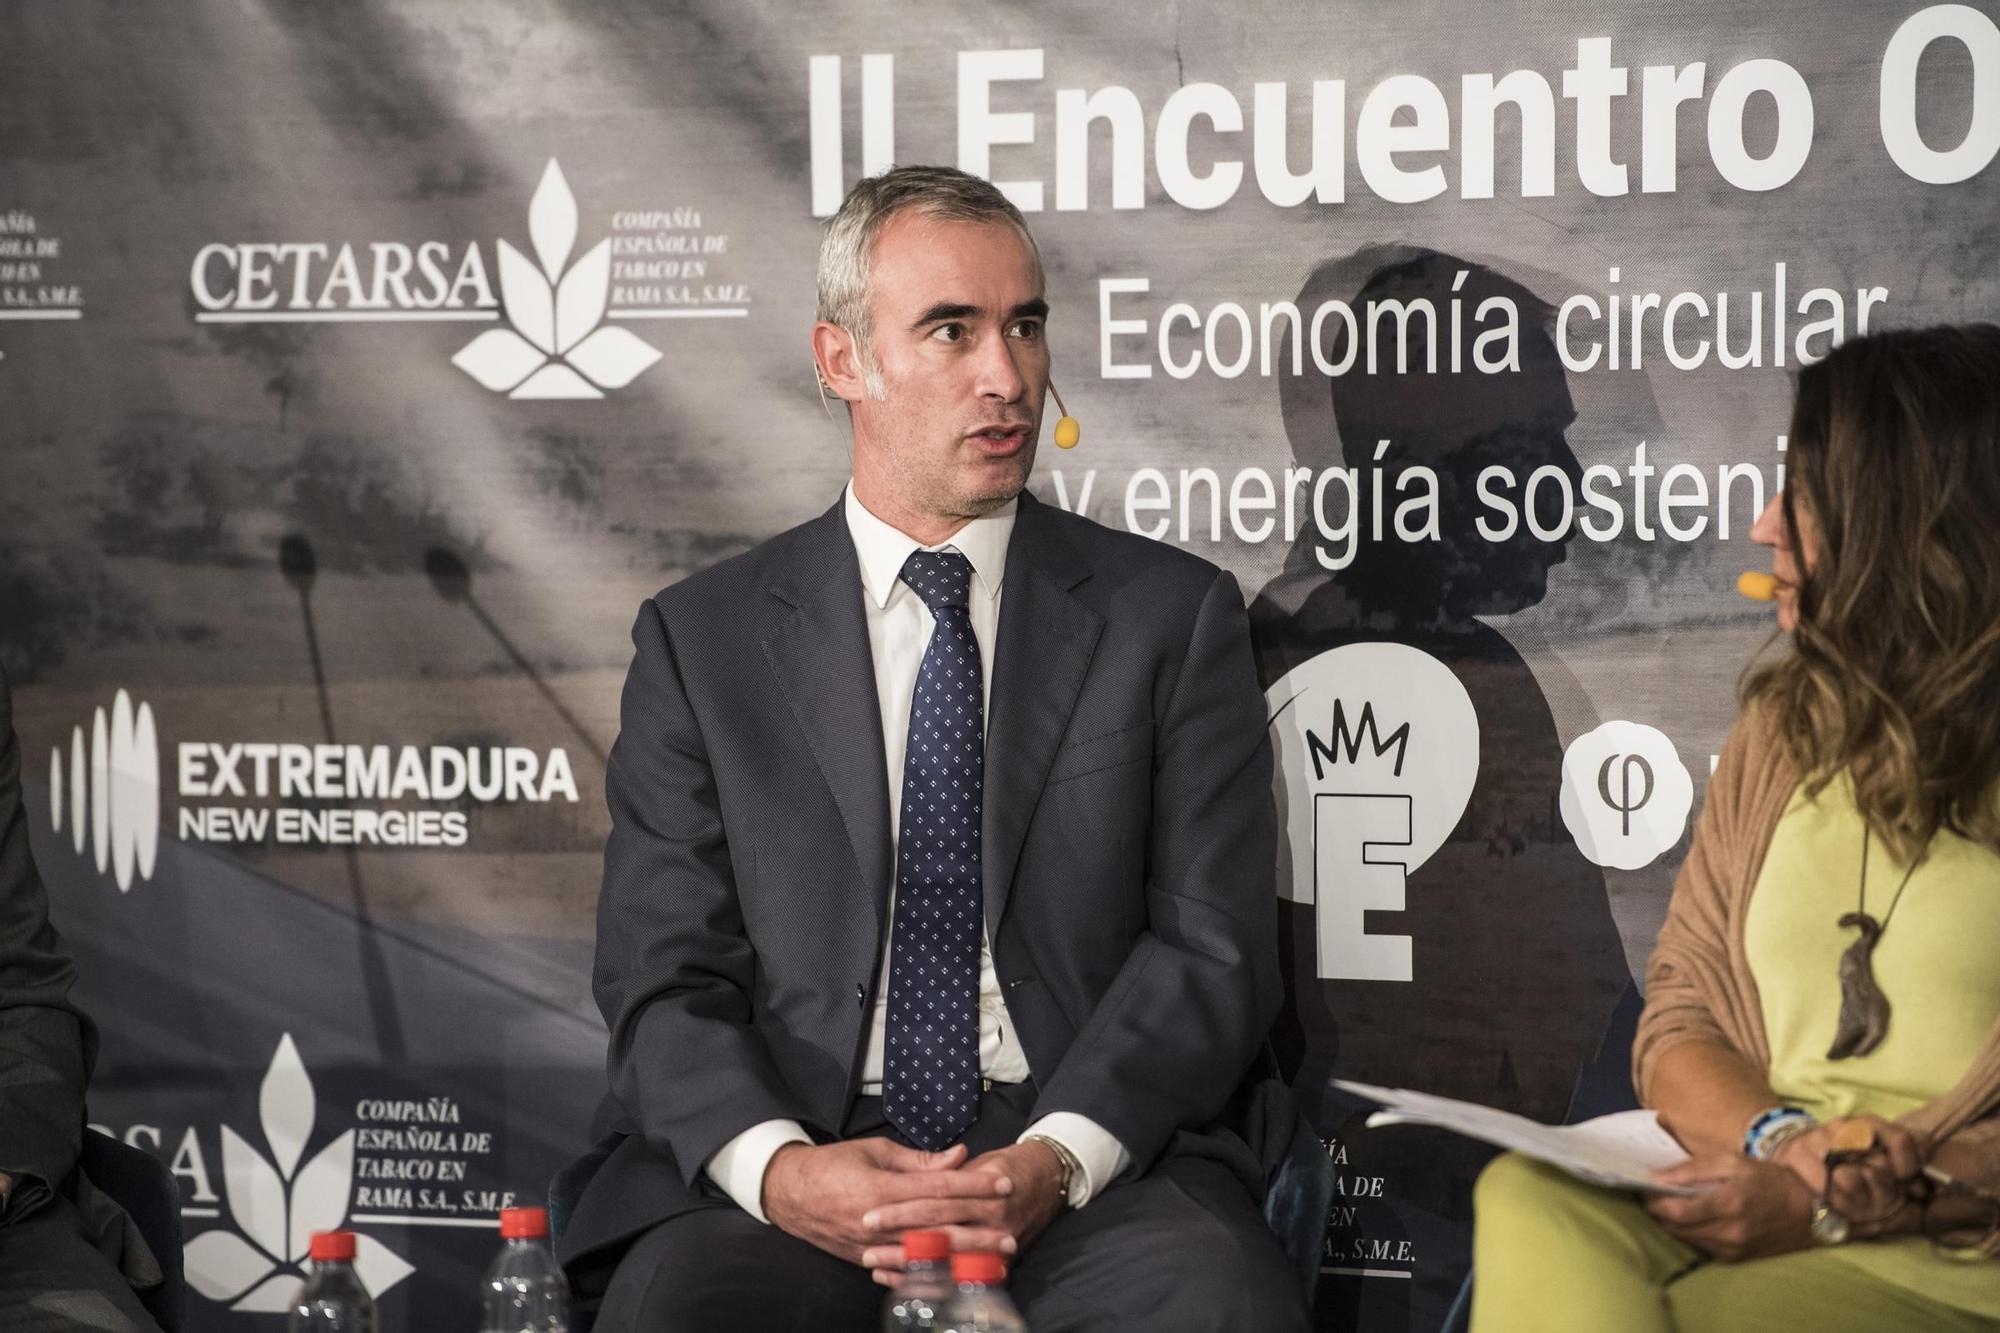 GALERÍA | II Encuentro ODS: Economía circular y energía sostenible